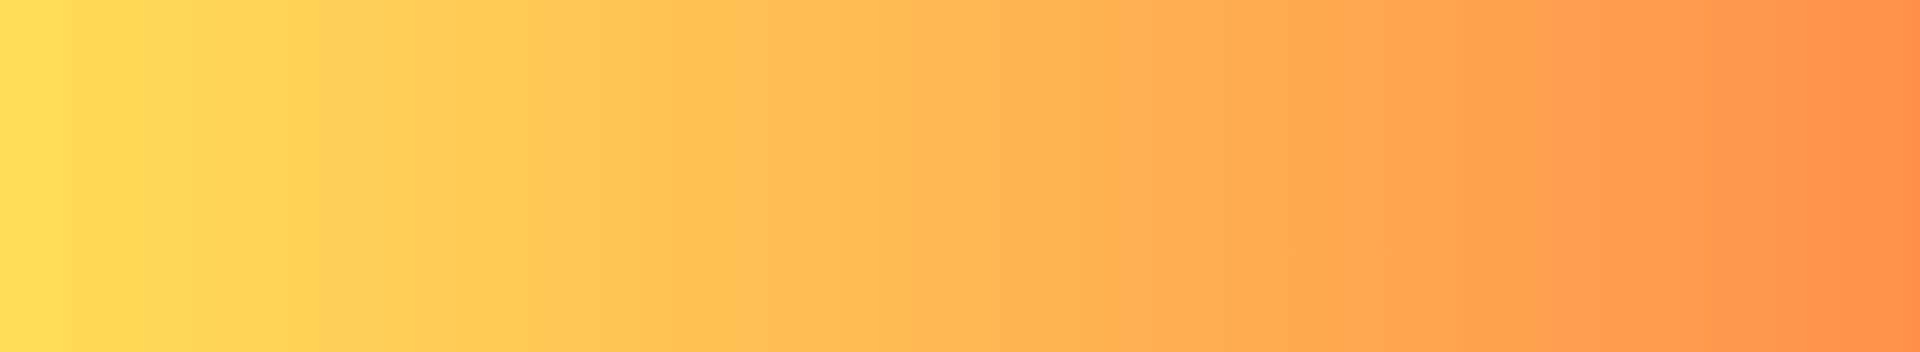 Orange gradient banner